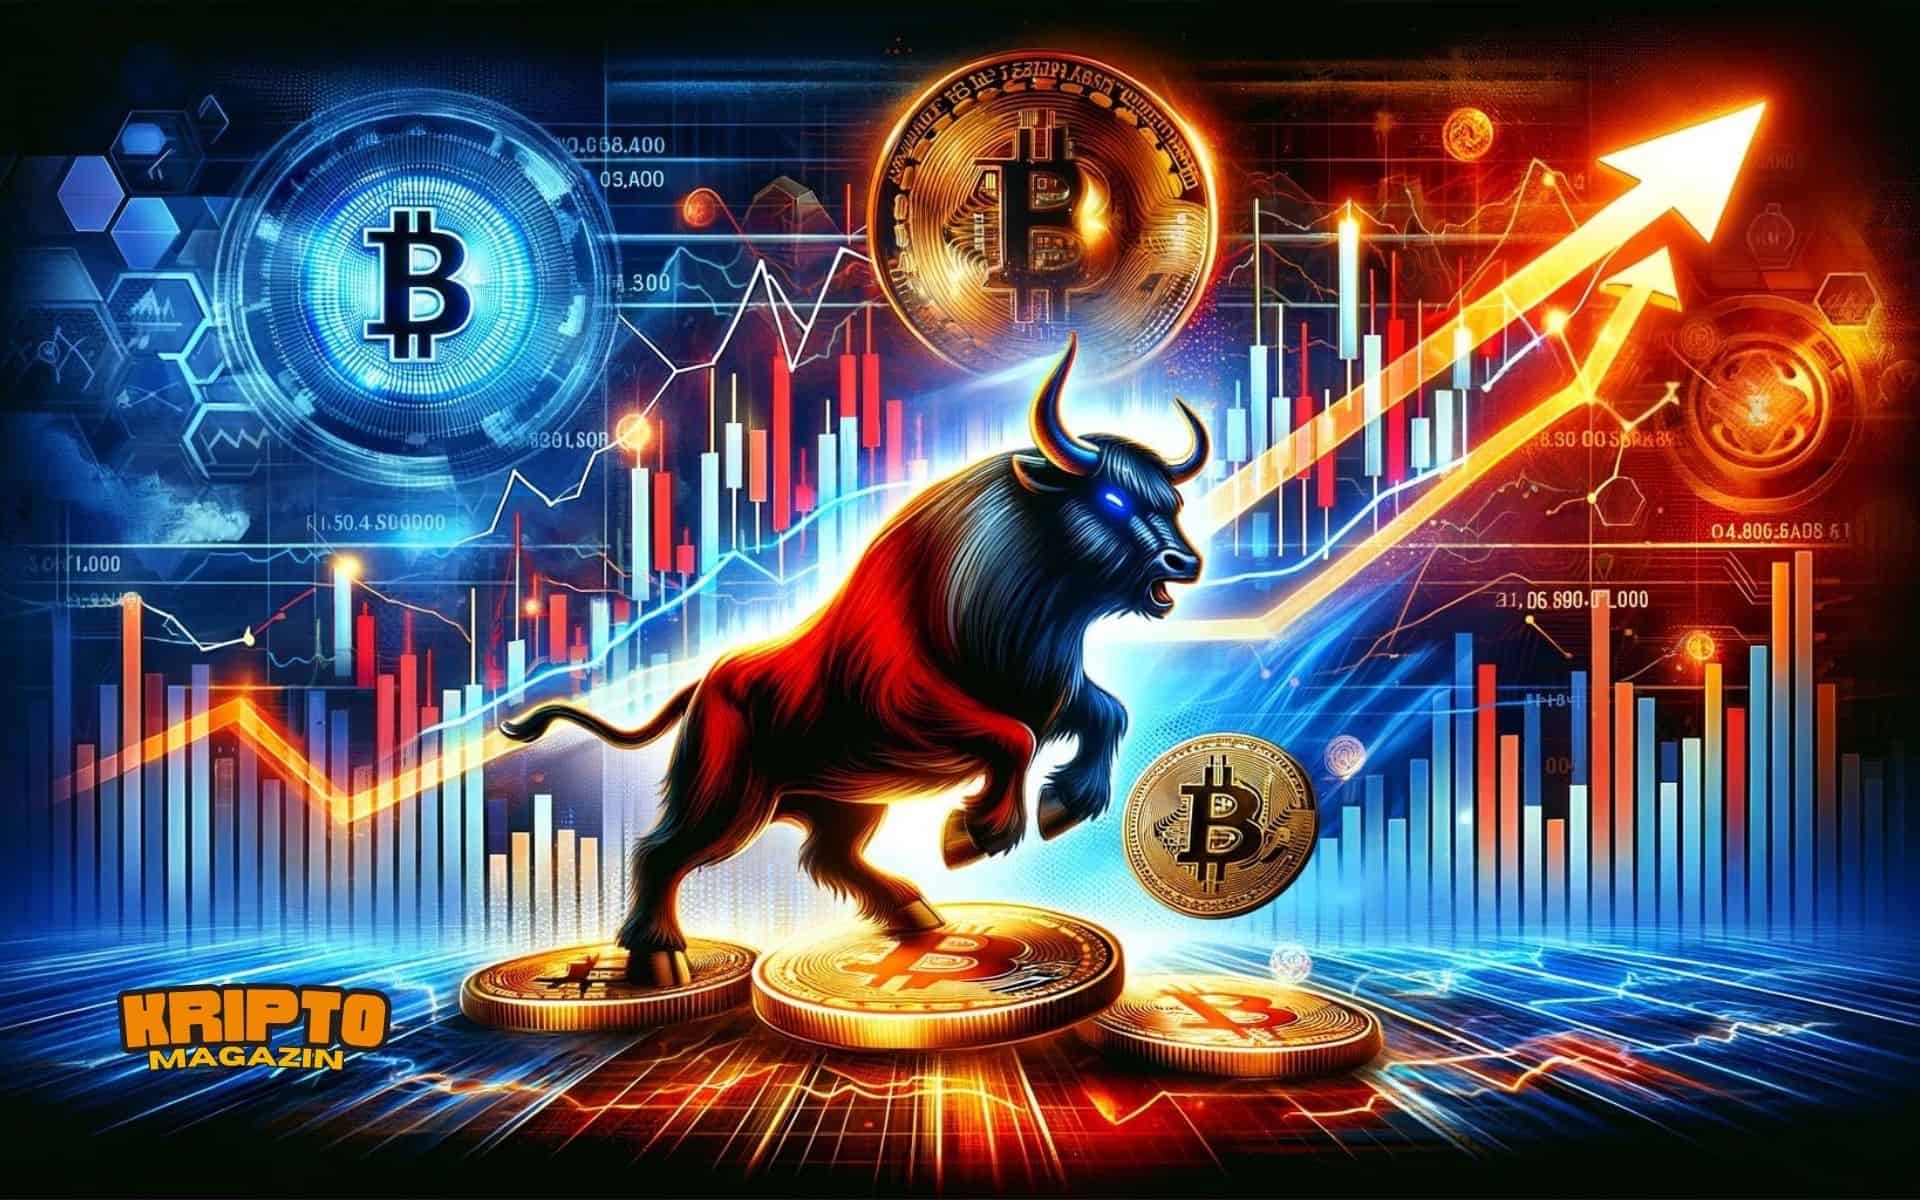 Kriptomagazin bitcoin bika